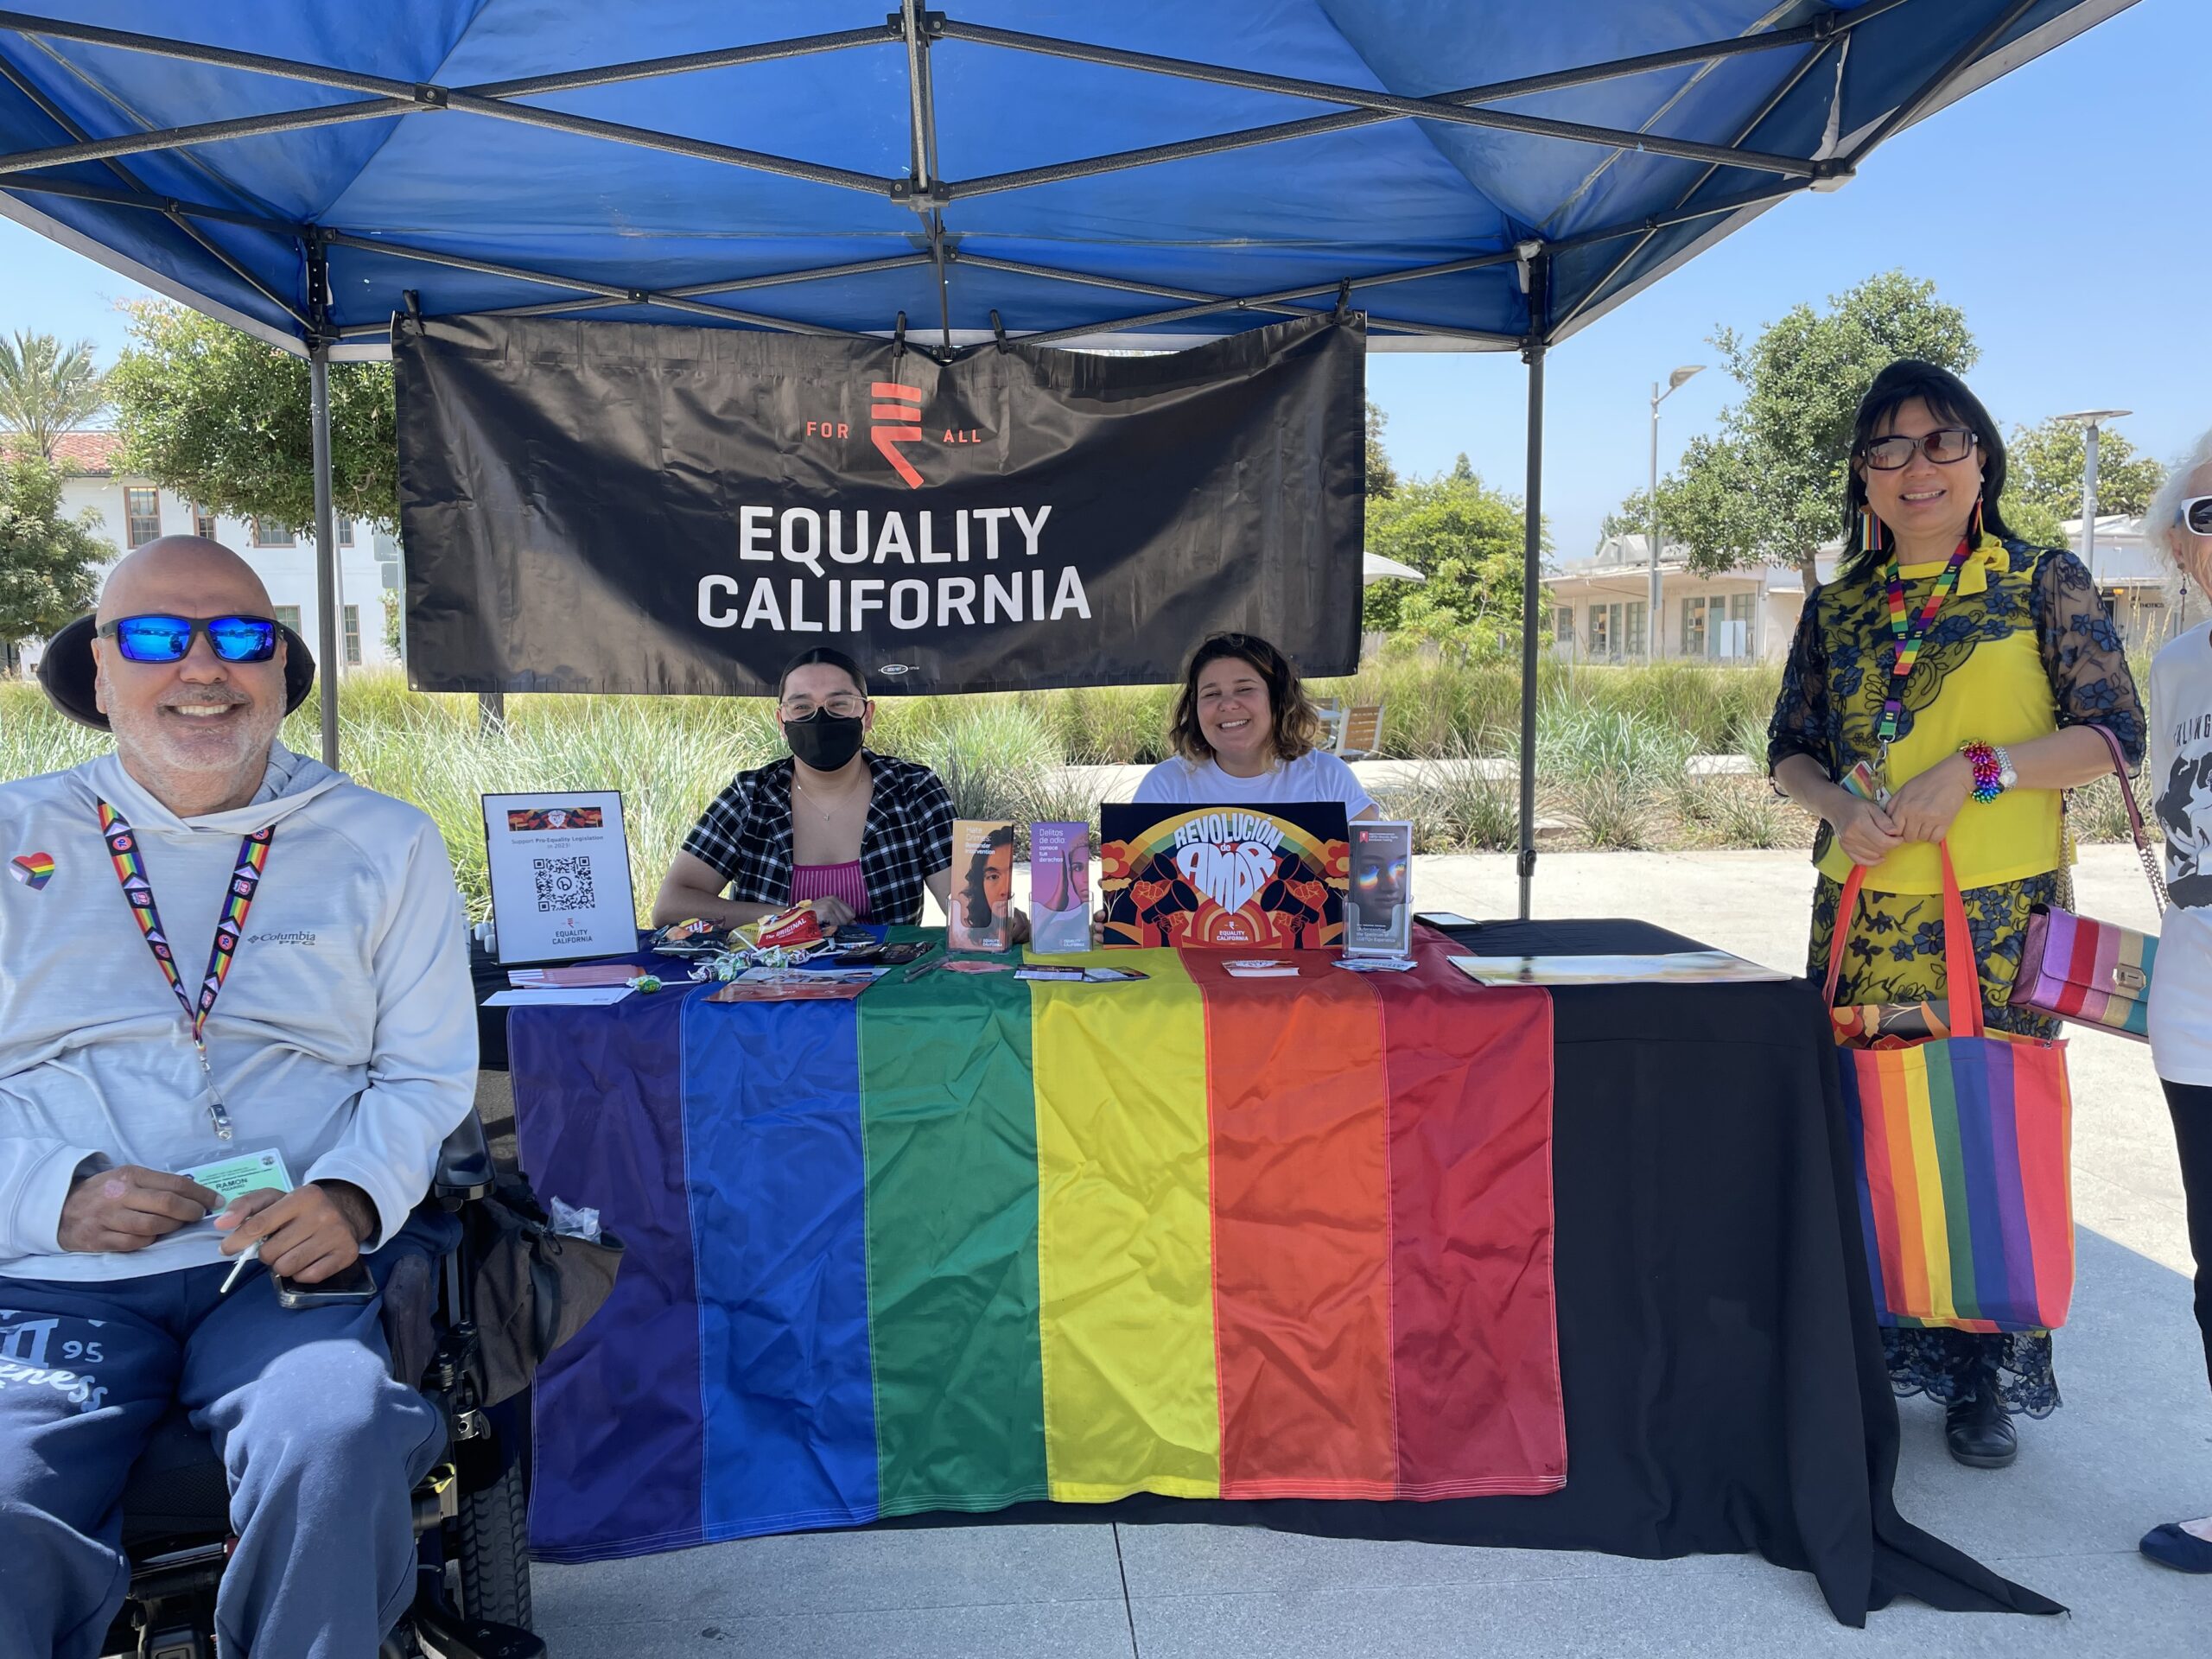 LA Health Services Celebrates Pride